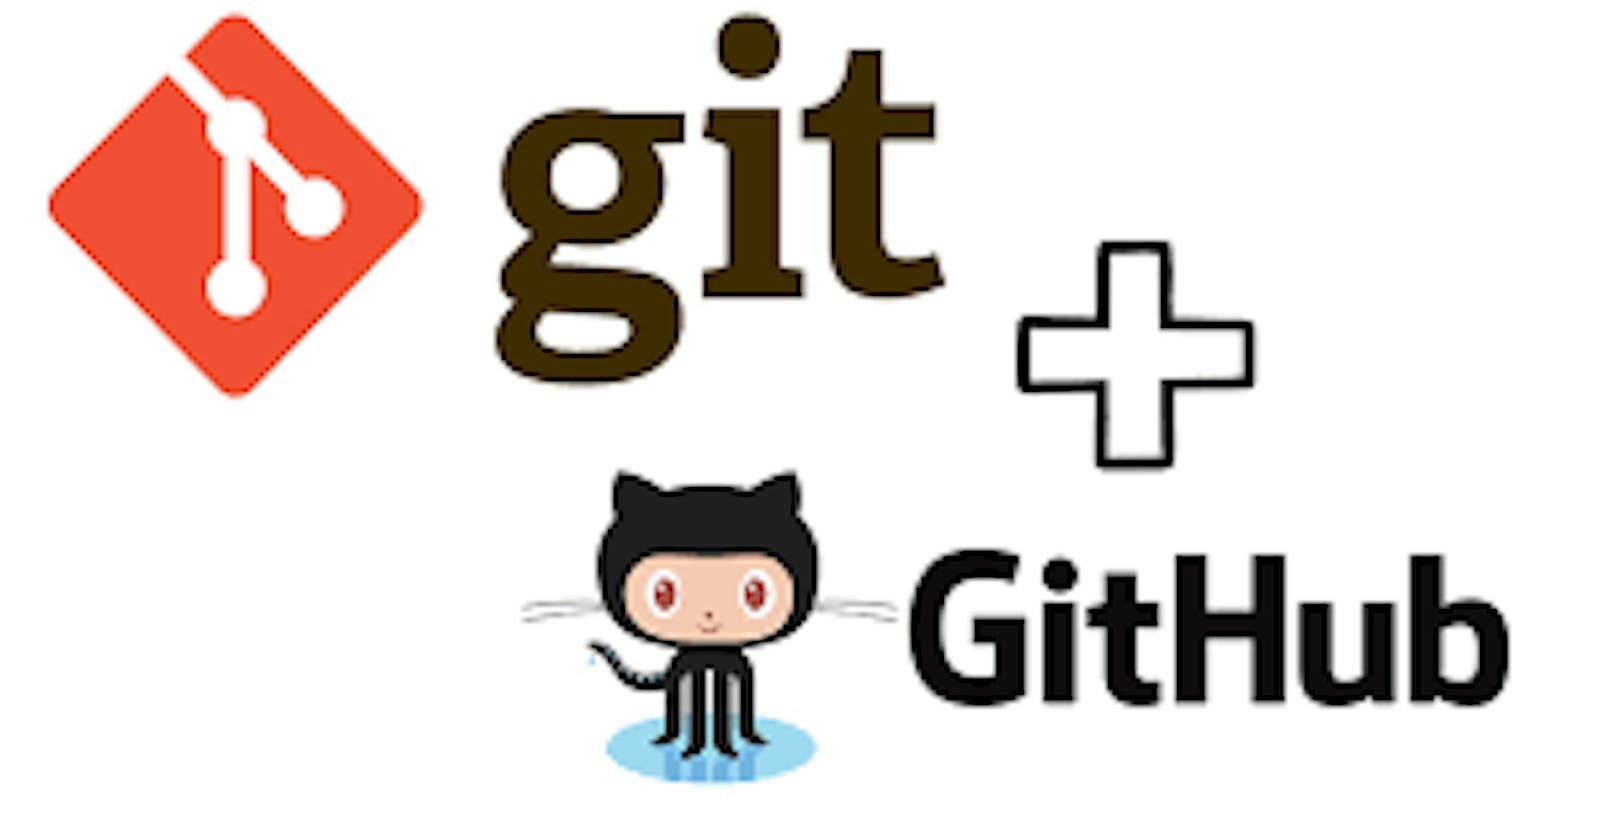 Git & Github for beginner's